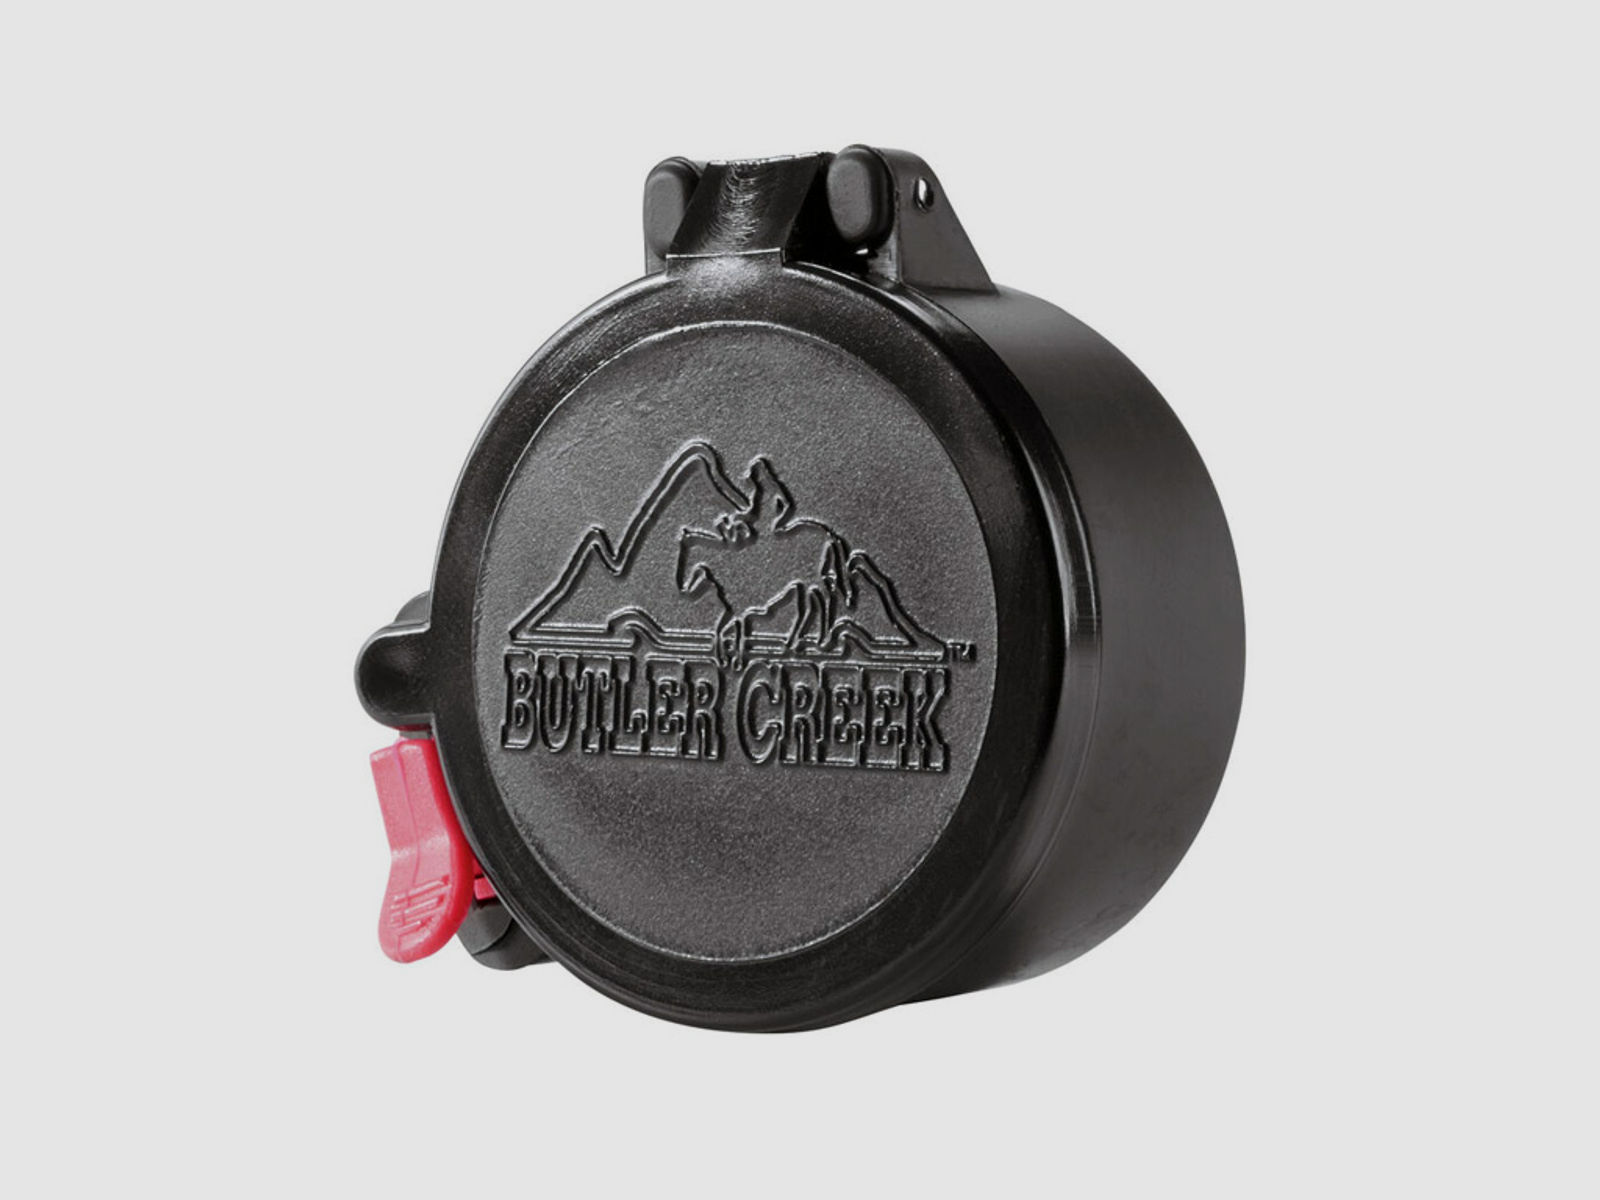 Butler Creek Flip-Open Staubschutzkappe Okular Nr. 17, Durchmesser 42,5 mm, mit SchnellĂ¶ffner